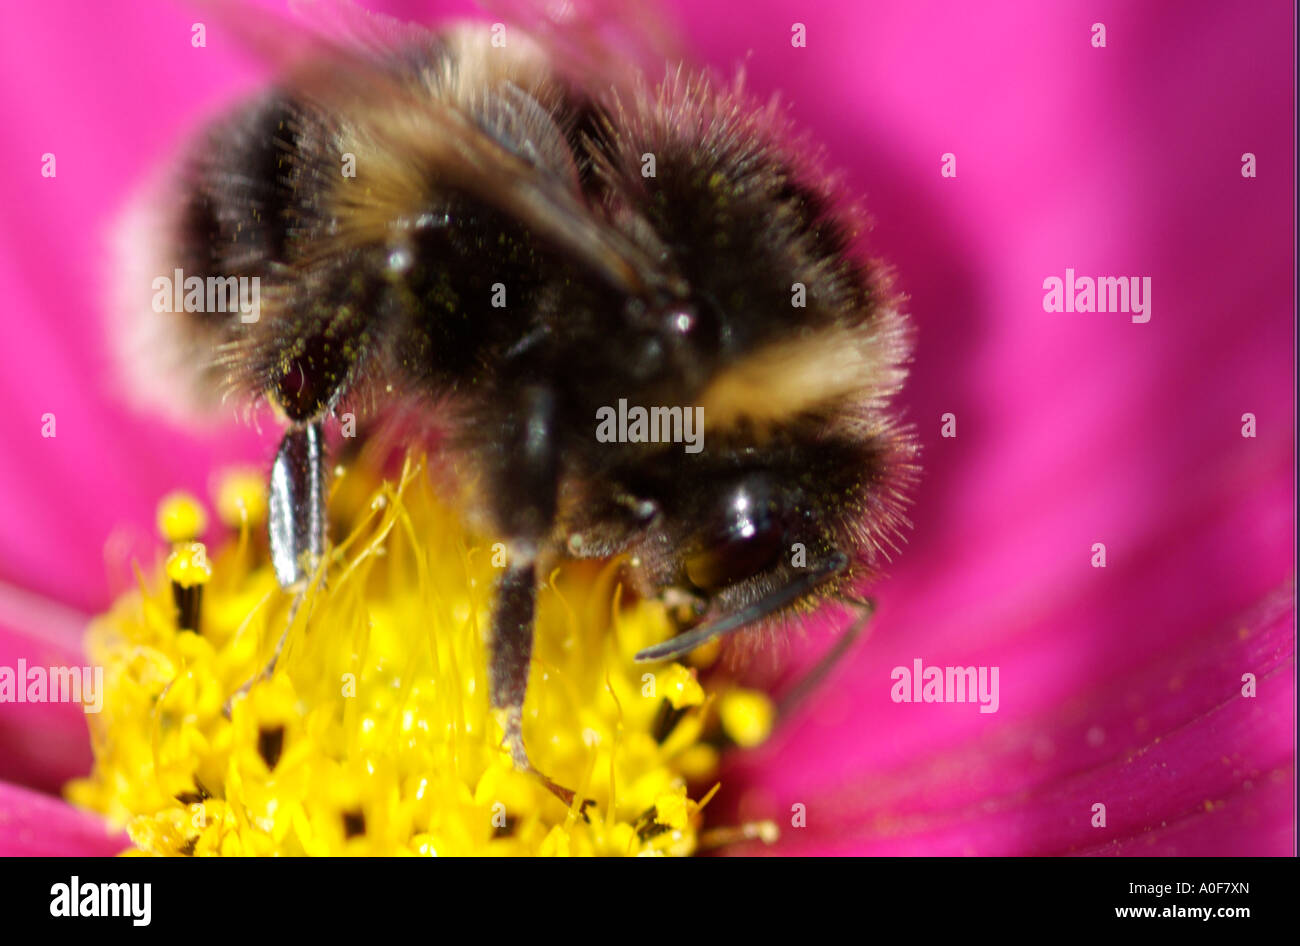 Cosmo, originaria del nord america è annuale attraente giardino fiore per le api. Primo piano della stigmatizzazione e polline.Bee di alimentazione. Foto Stock